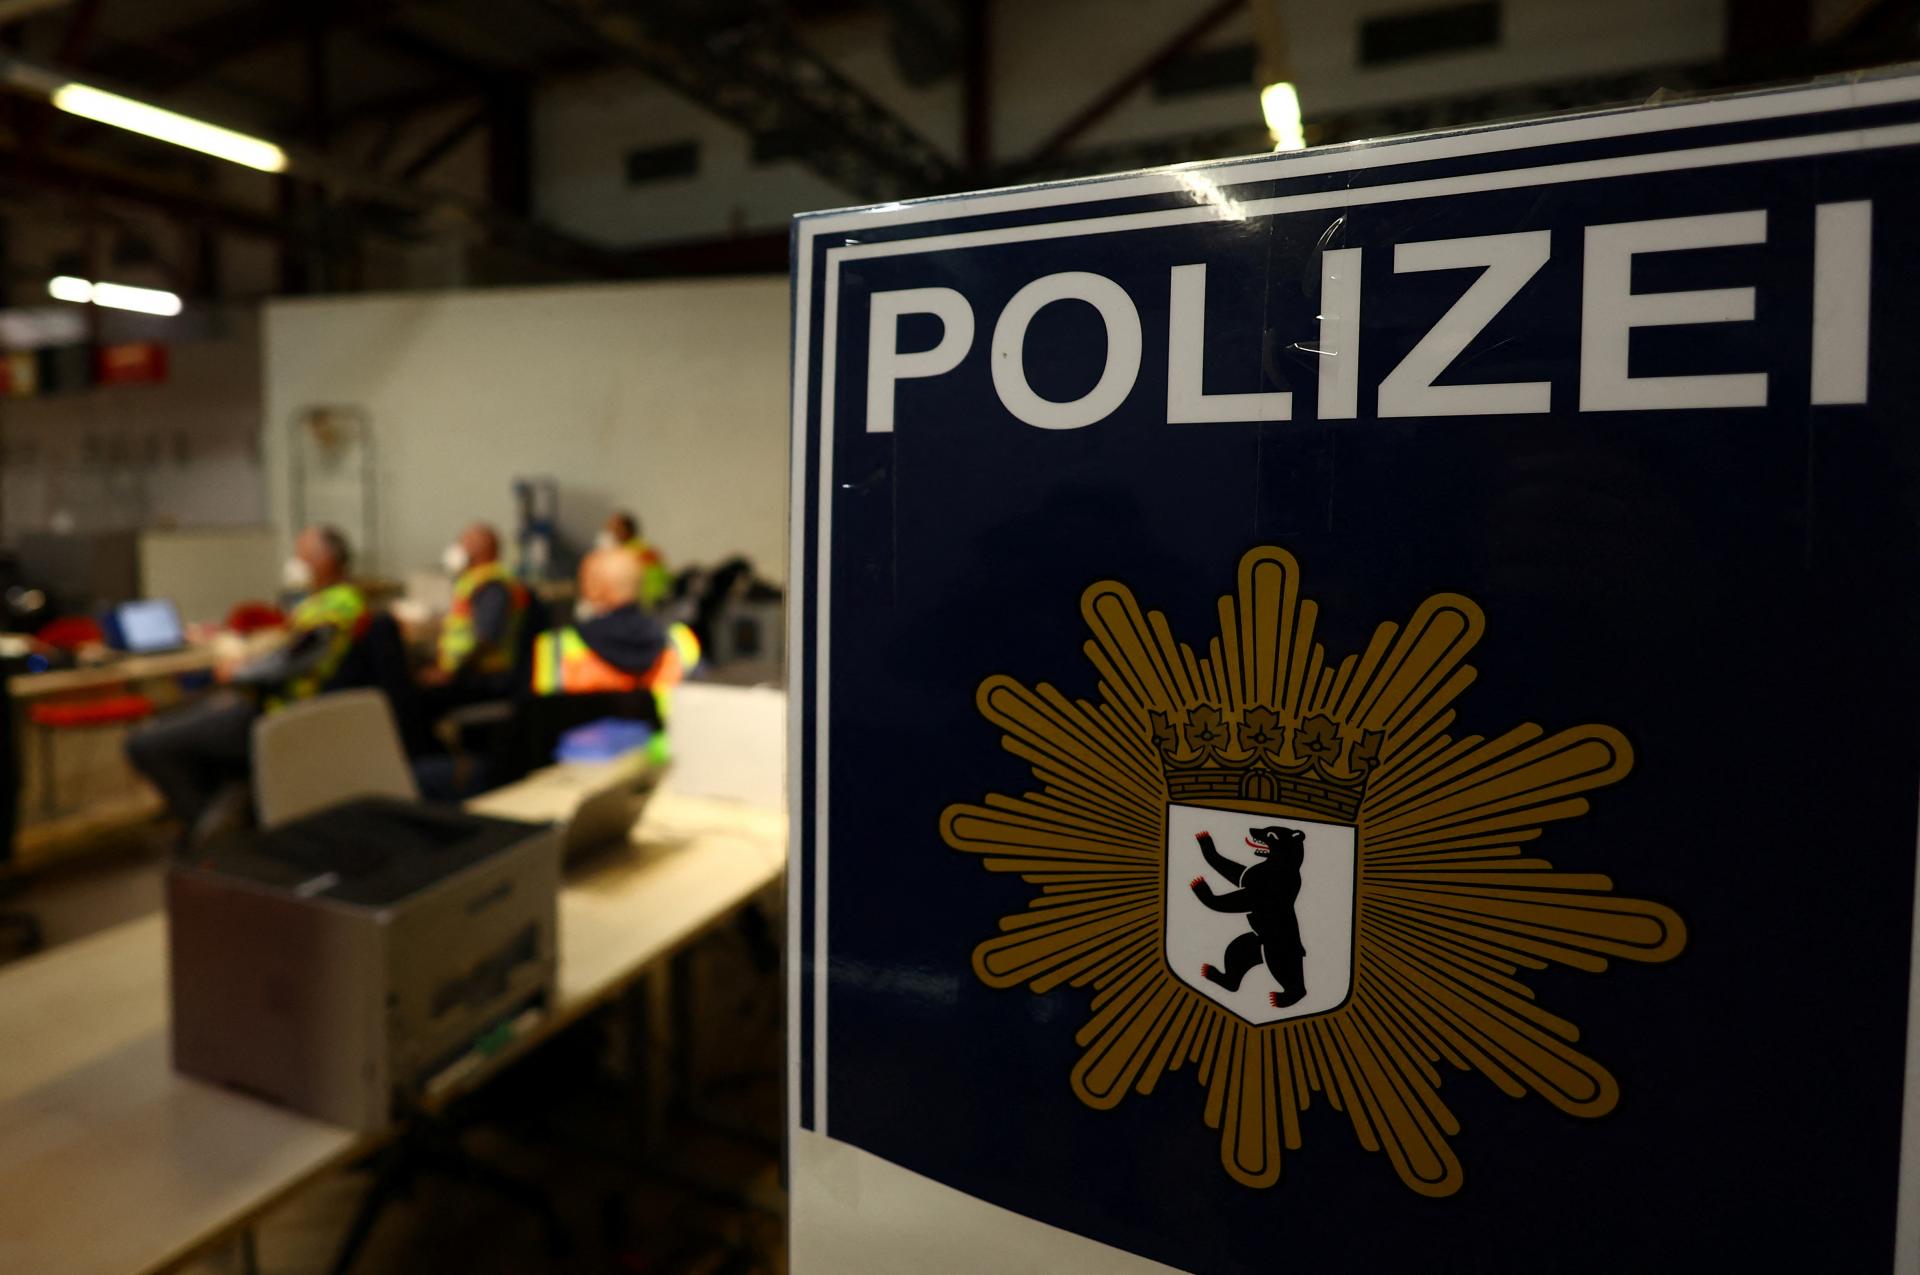 Nemecký policajt v utajení pomohol odhaliť plán na únos ministra zdravotníctva